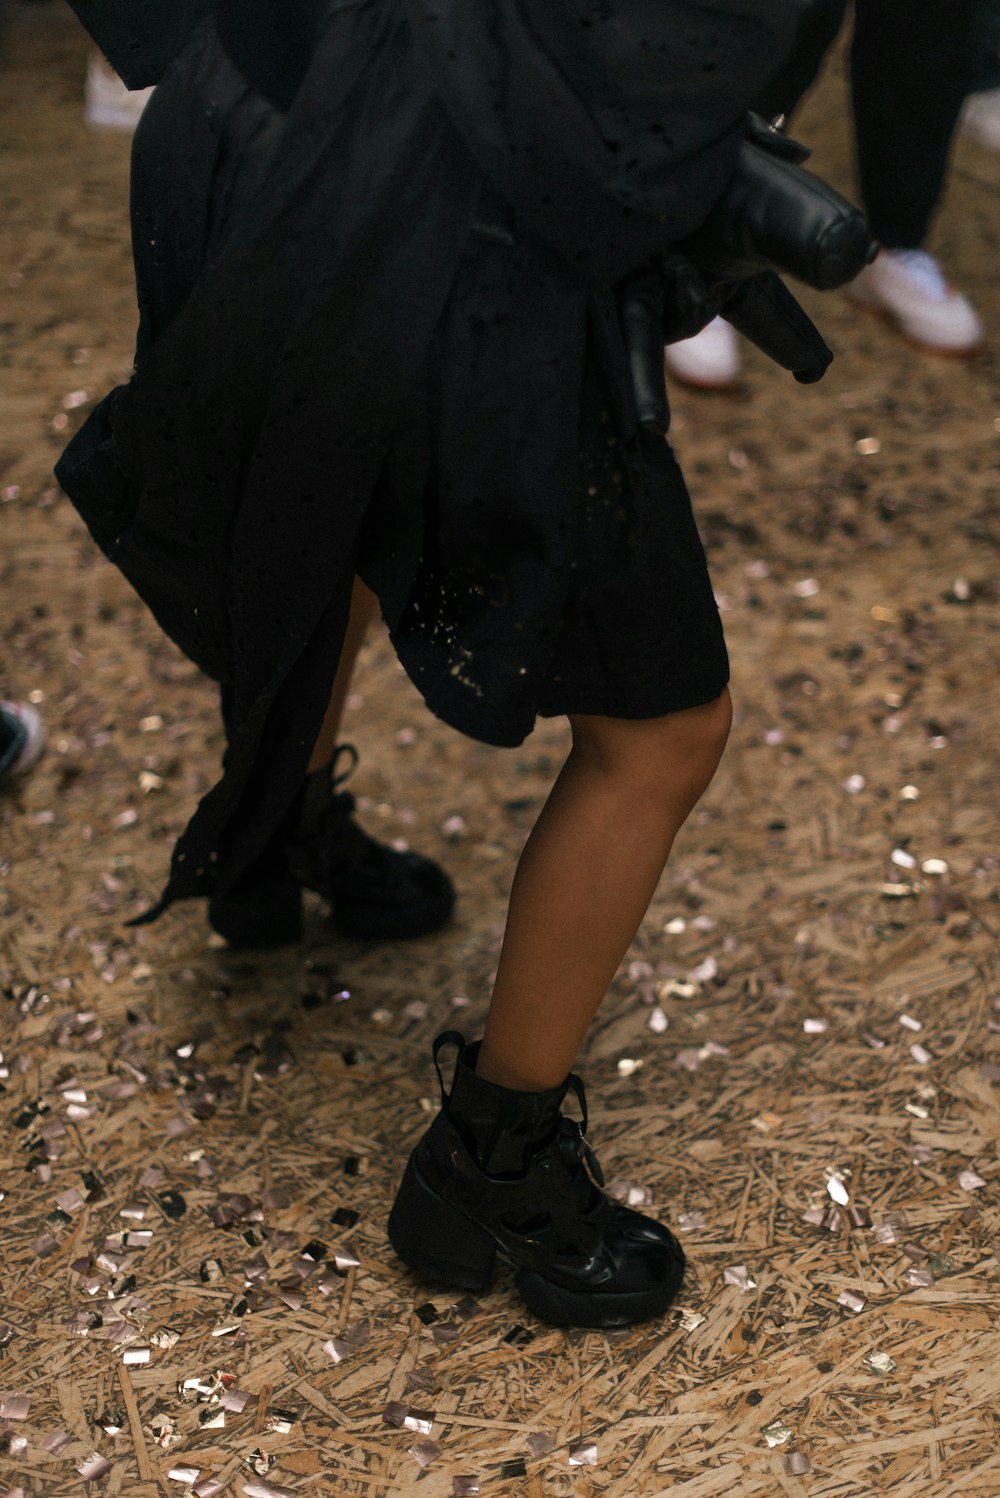 eine Person in einem schwarzen Outfit und schwarzen Schuhen